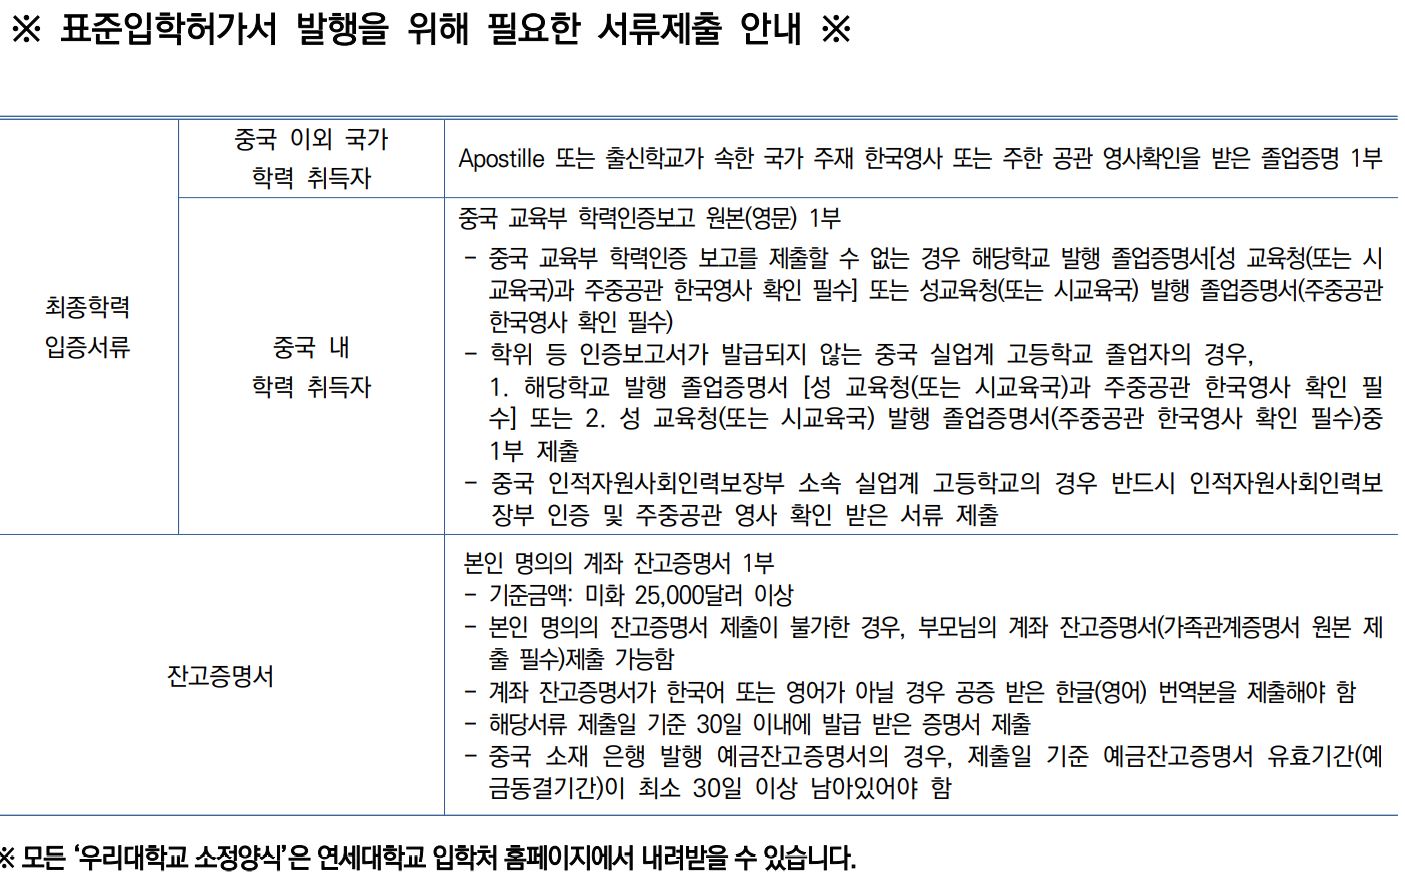 연세대 글로벌인재학부 외국인전형 제출서류  연세대 GLC 외국인전형 제출서류 Yonsei Univ. GLC Admission Documents for Foreigners_05_제출서류.JPG